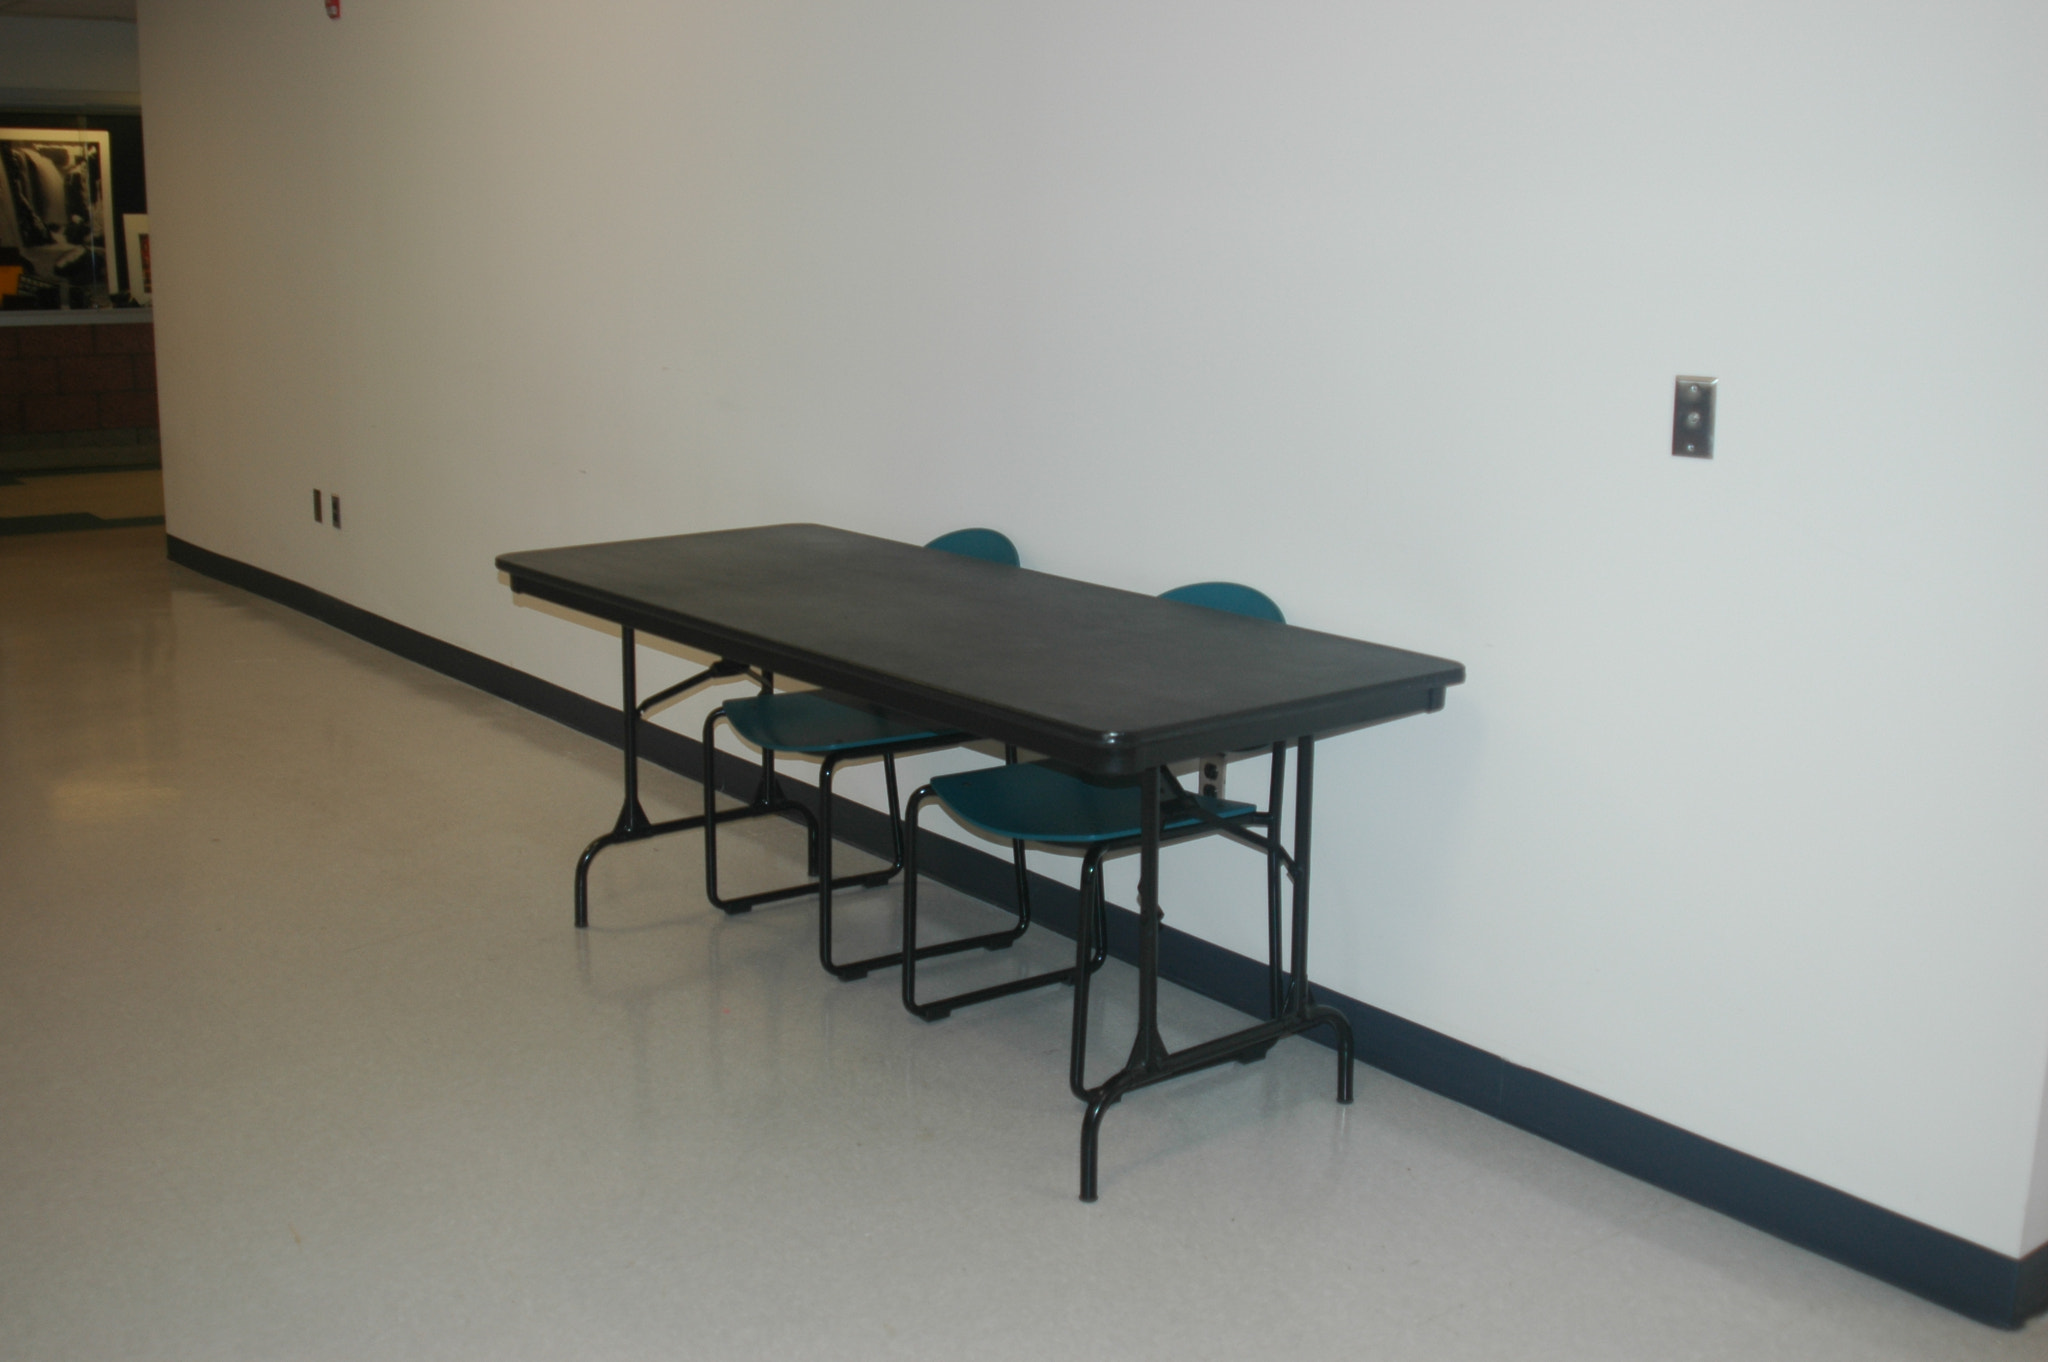 Nikon D70s sample photo. A table in a corridor photography